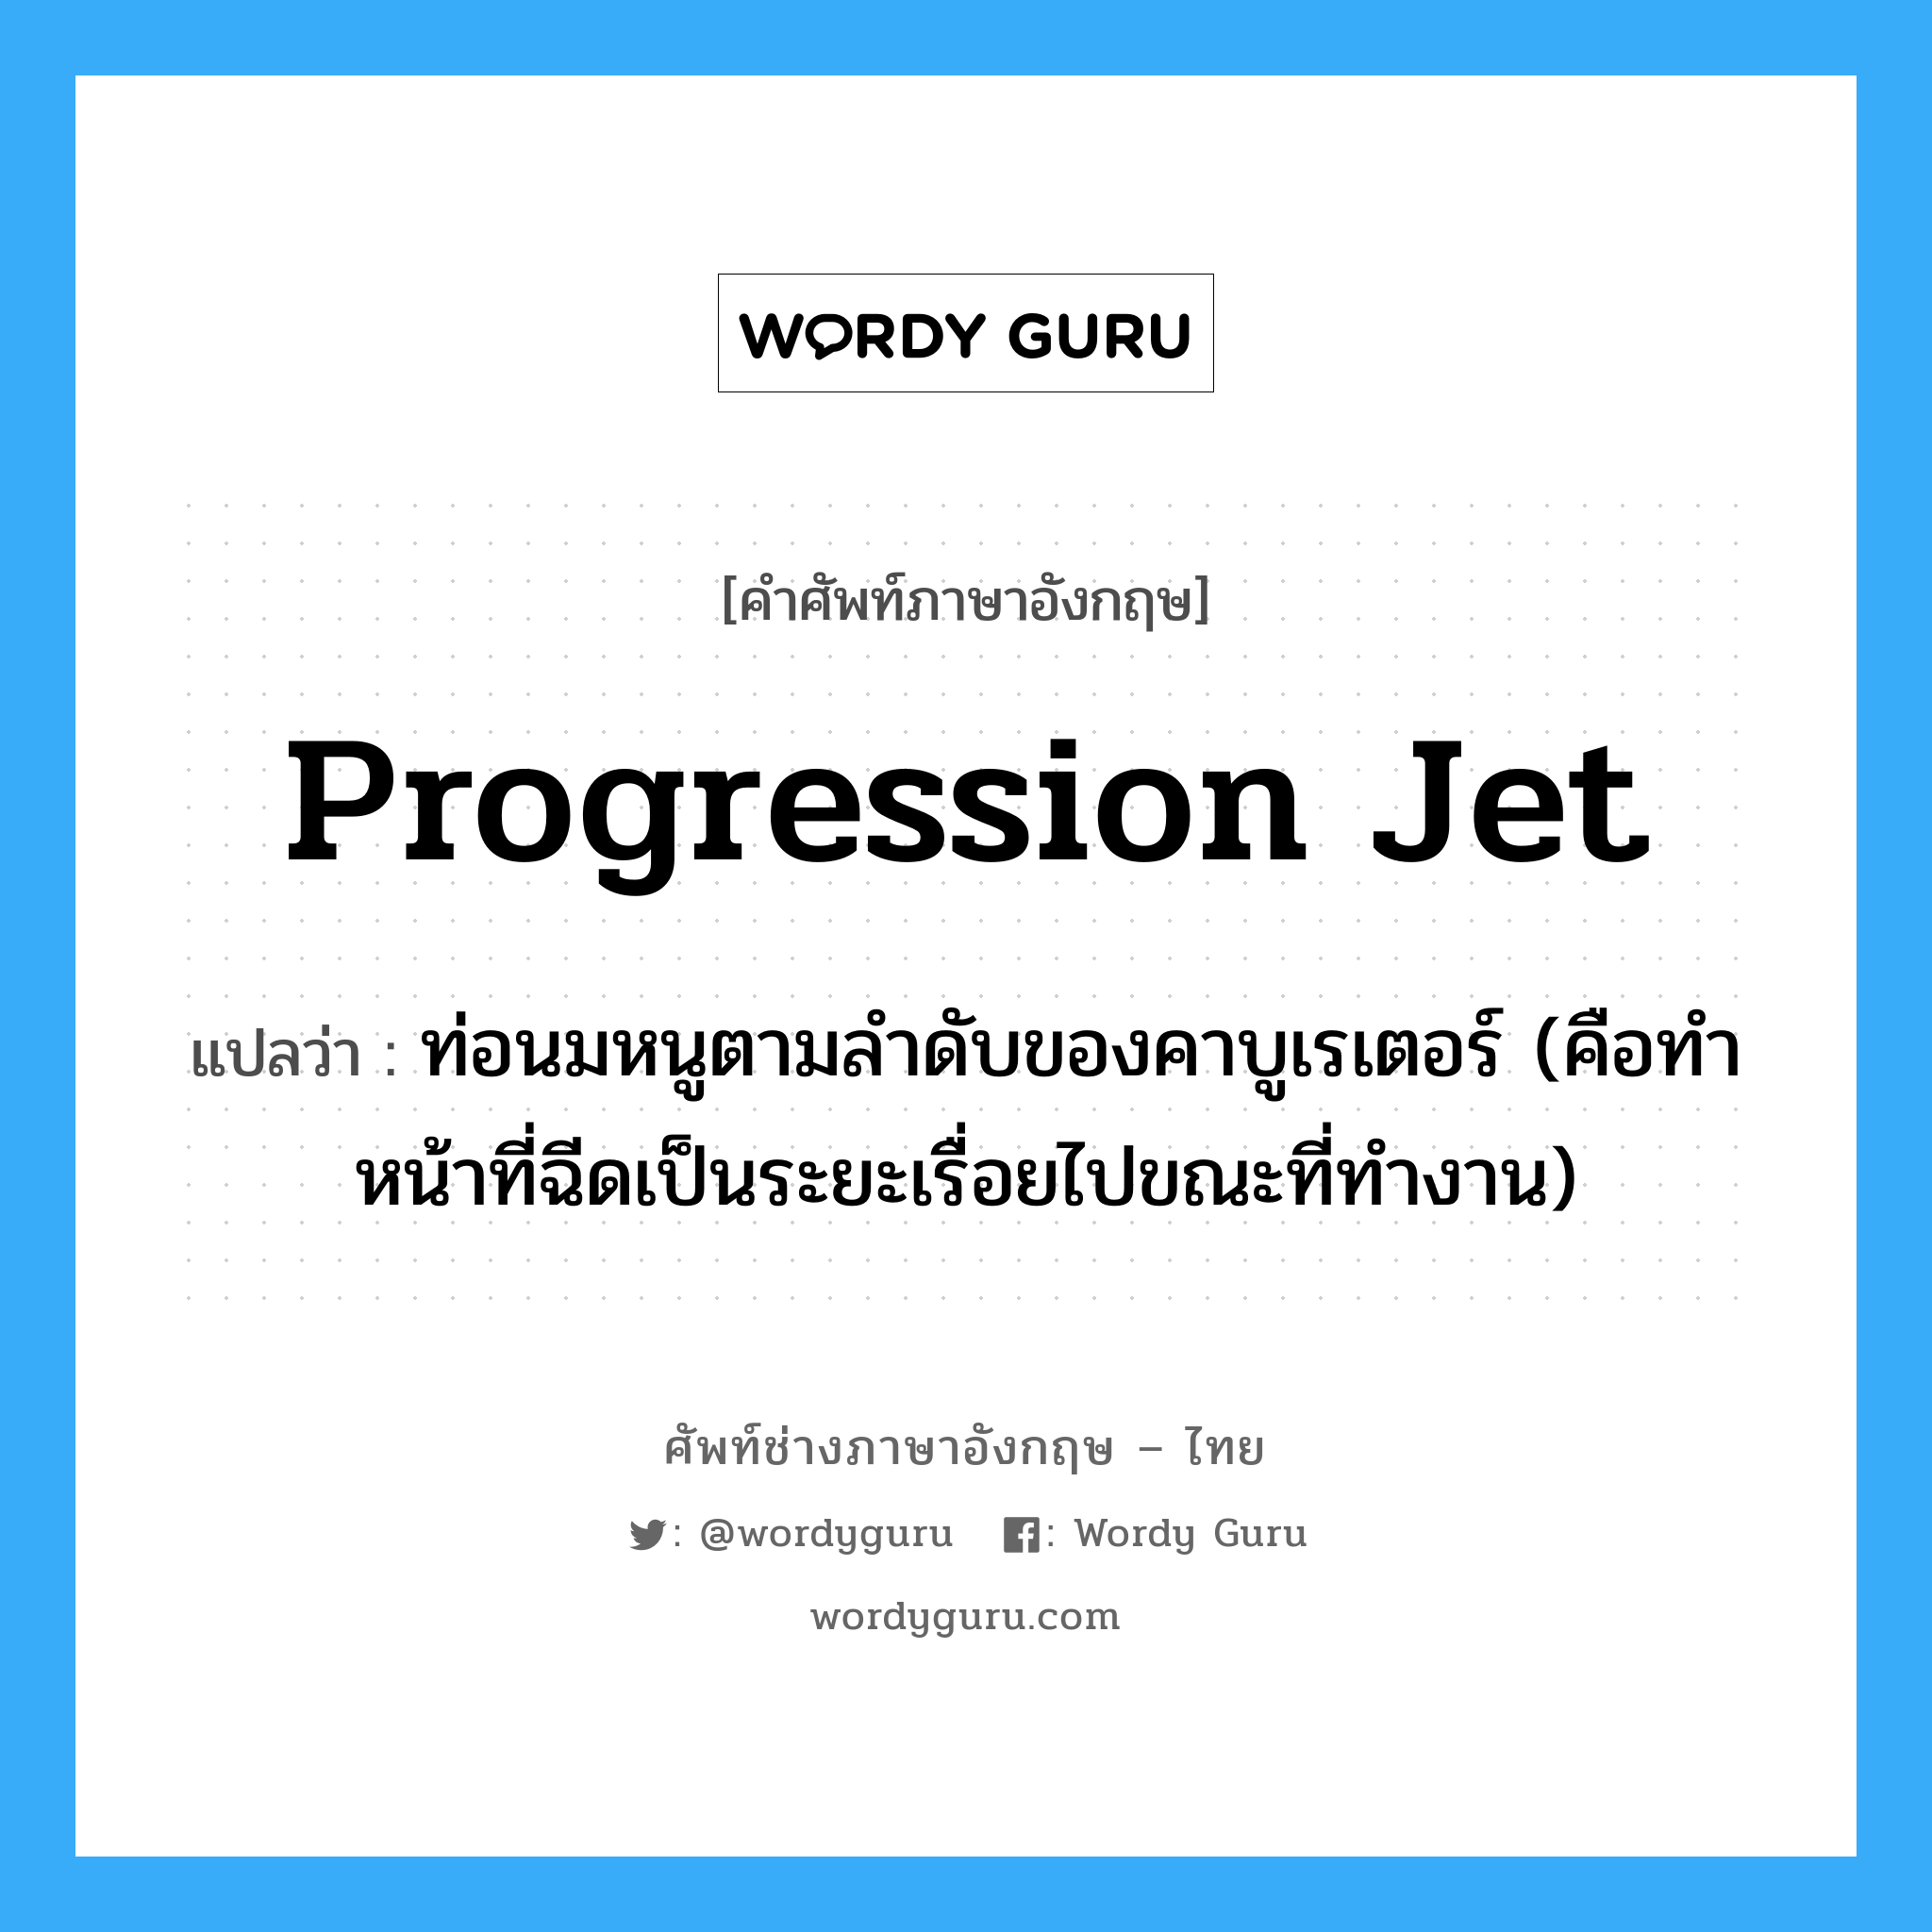 progression jet แปลว่า?, คำศัพท์ช่างภาษาอังกฤษ - ไทย progression jet คำศัพท์ภาษาอังกฤษ progression jet แปลว่า ท่อนมหนูตามลำดับของคาบูเรเตอร์ (คือทำหน้าที่ฉีดเป็นระยะเรื่อยไปขณะที่ทำงาน)